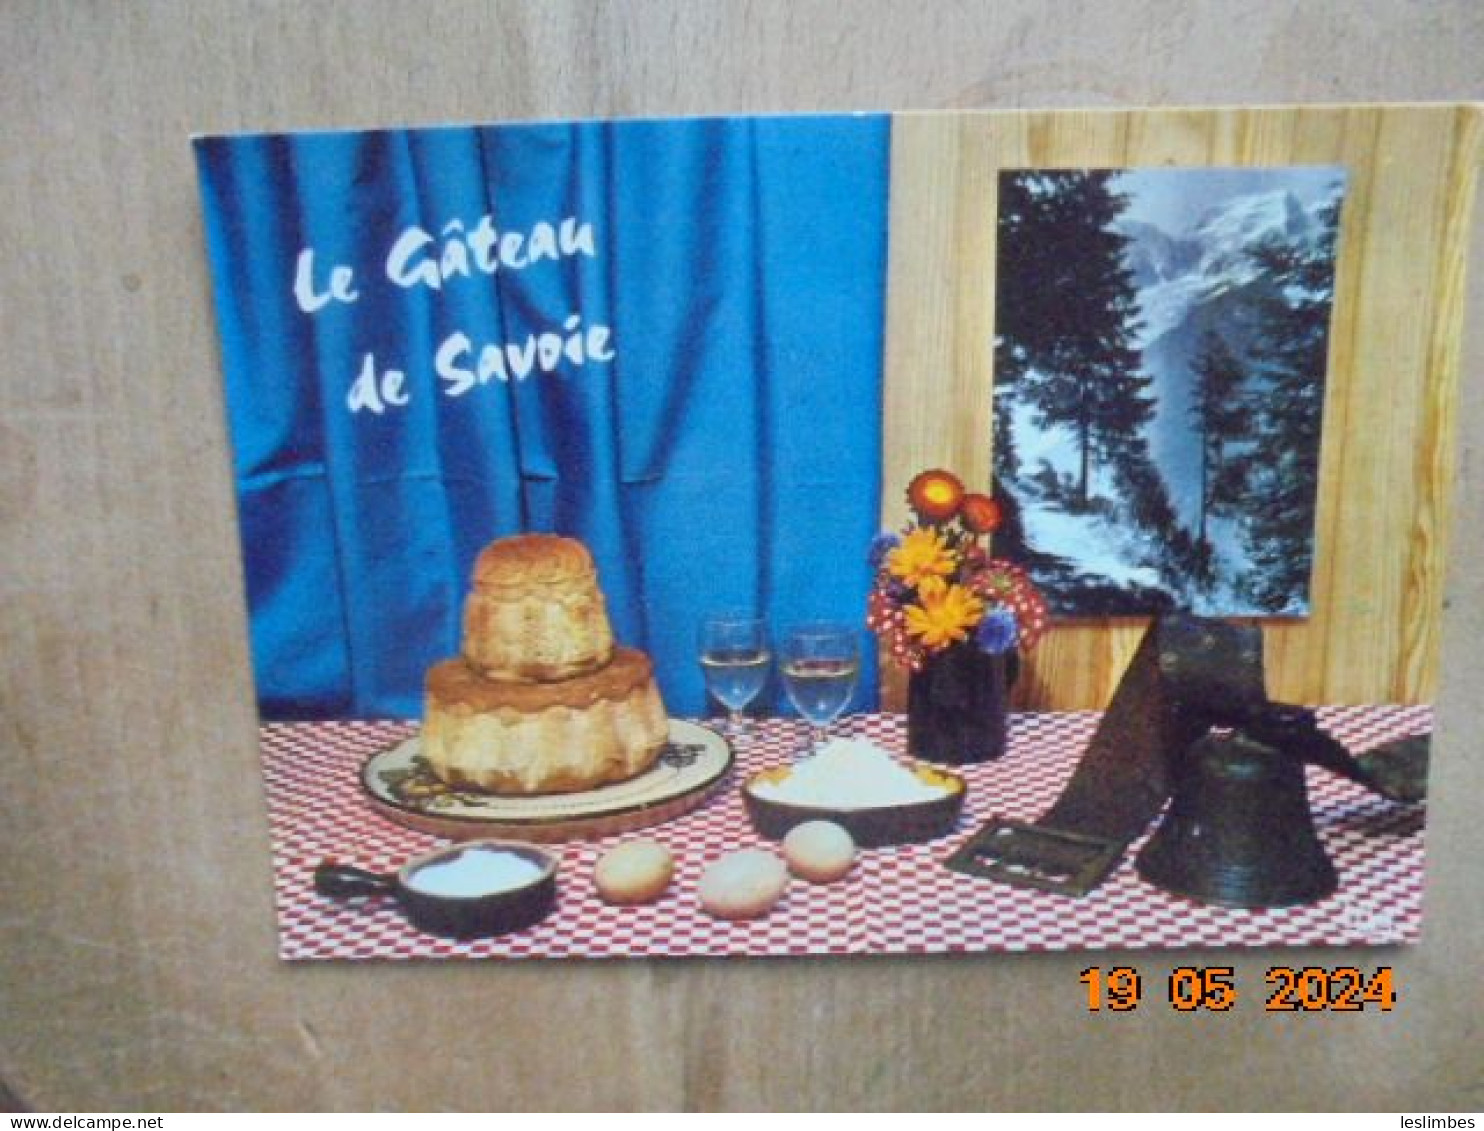 Le Gateau De Savoie. Edy 1688 - Recipes (cooking)